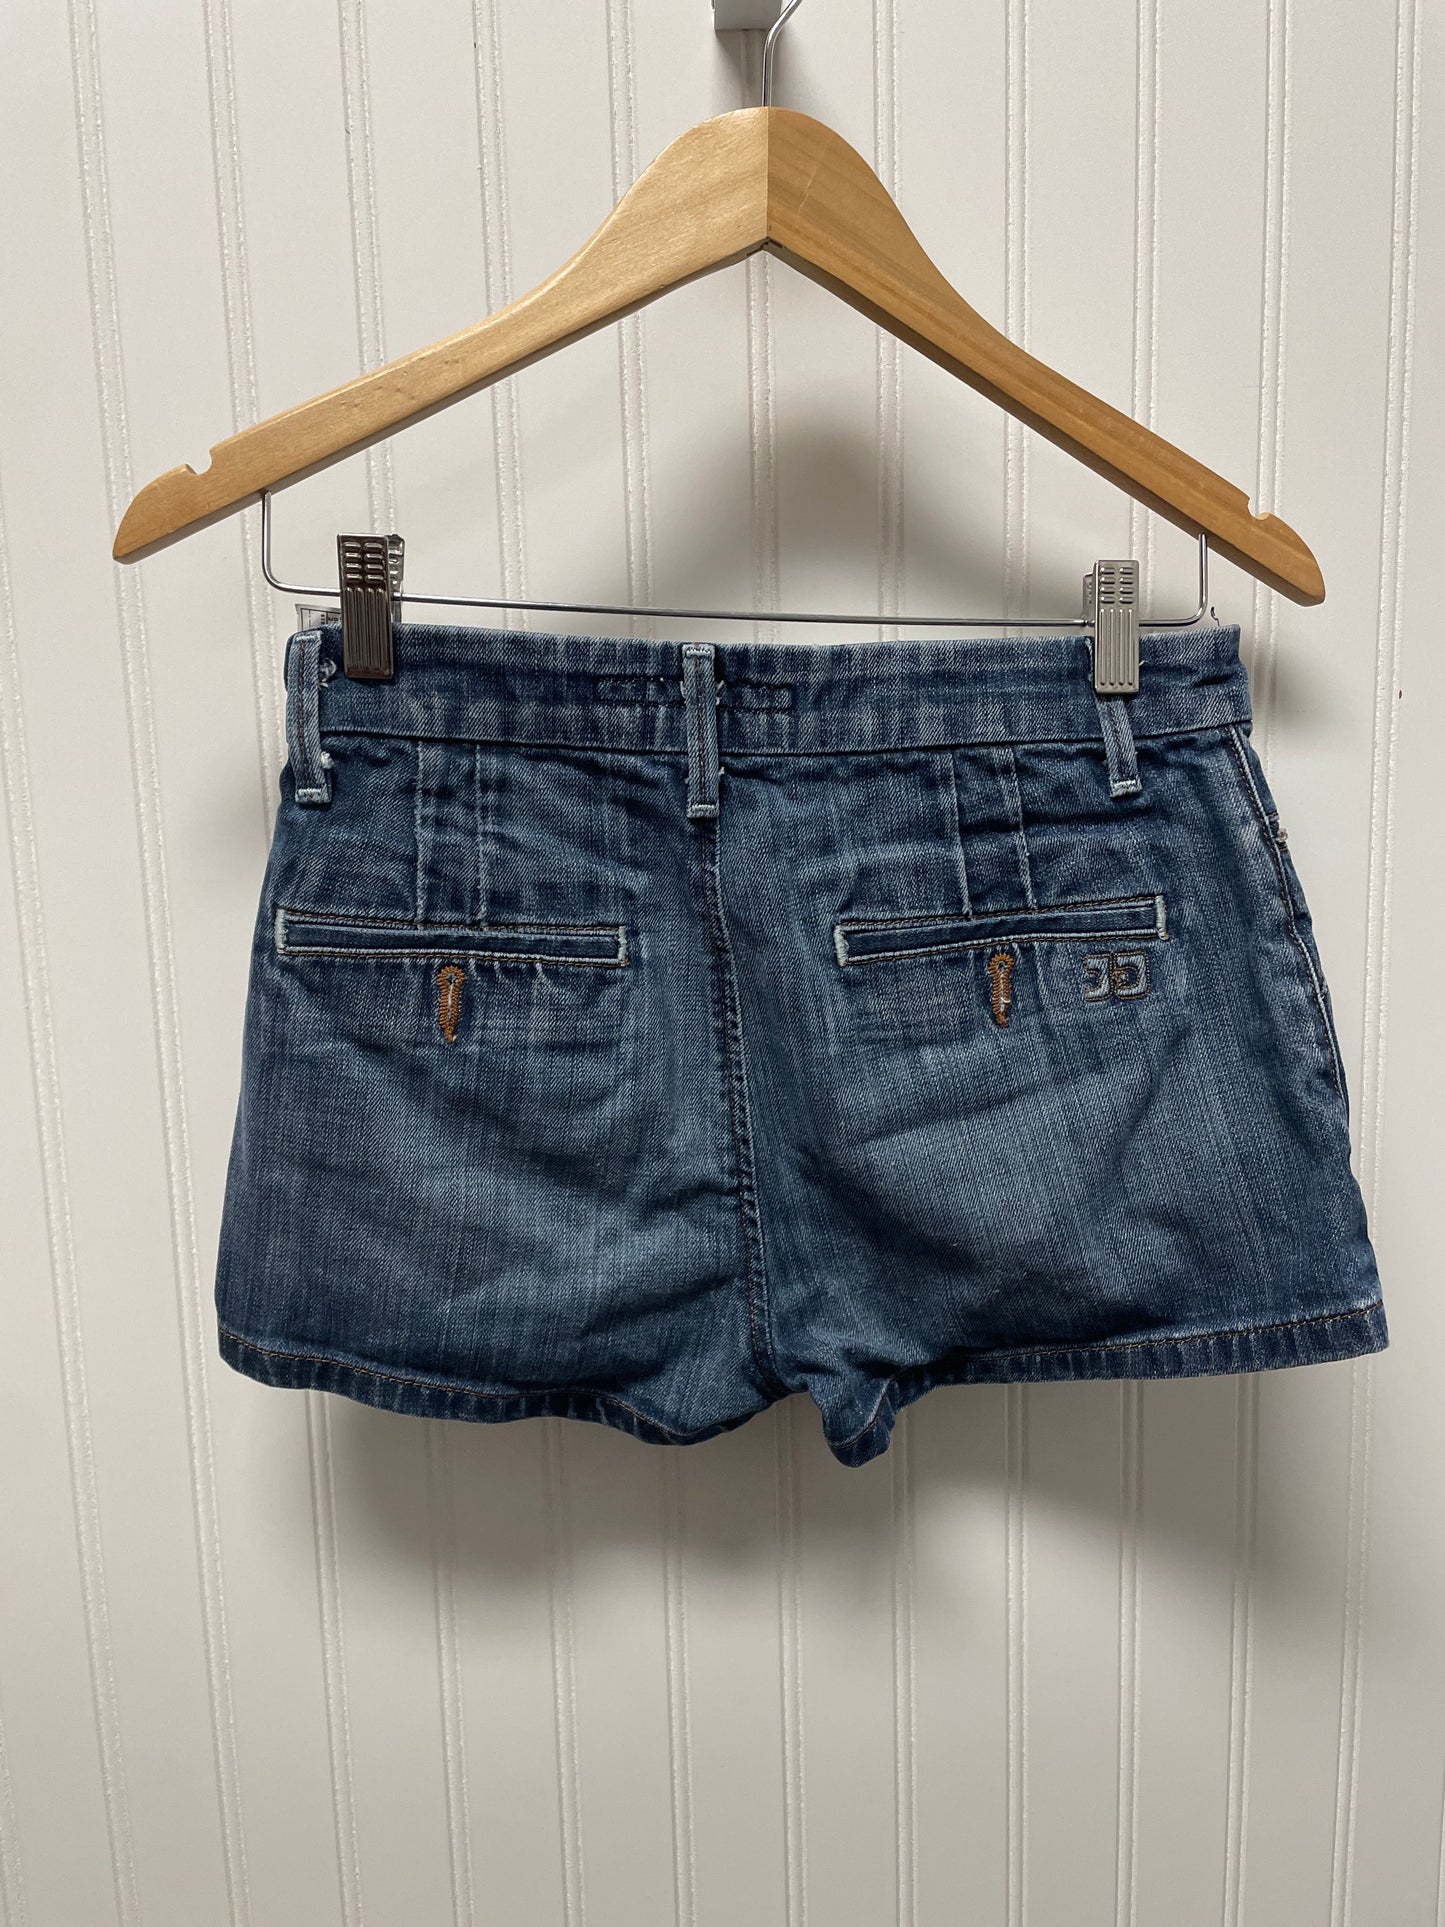 Blue Denim Shorts Designer Joes Jeans, Size 2